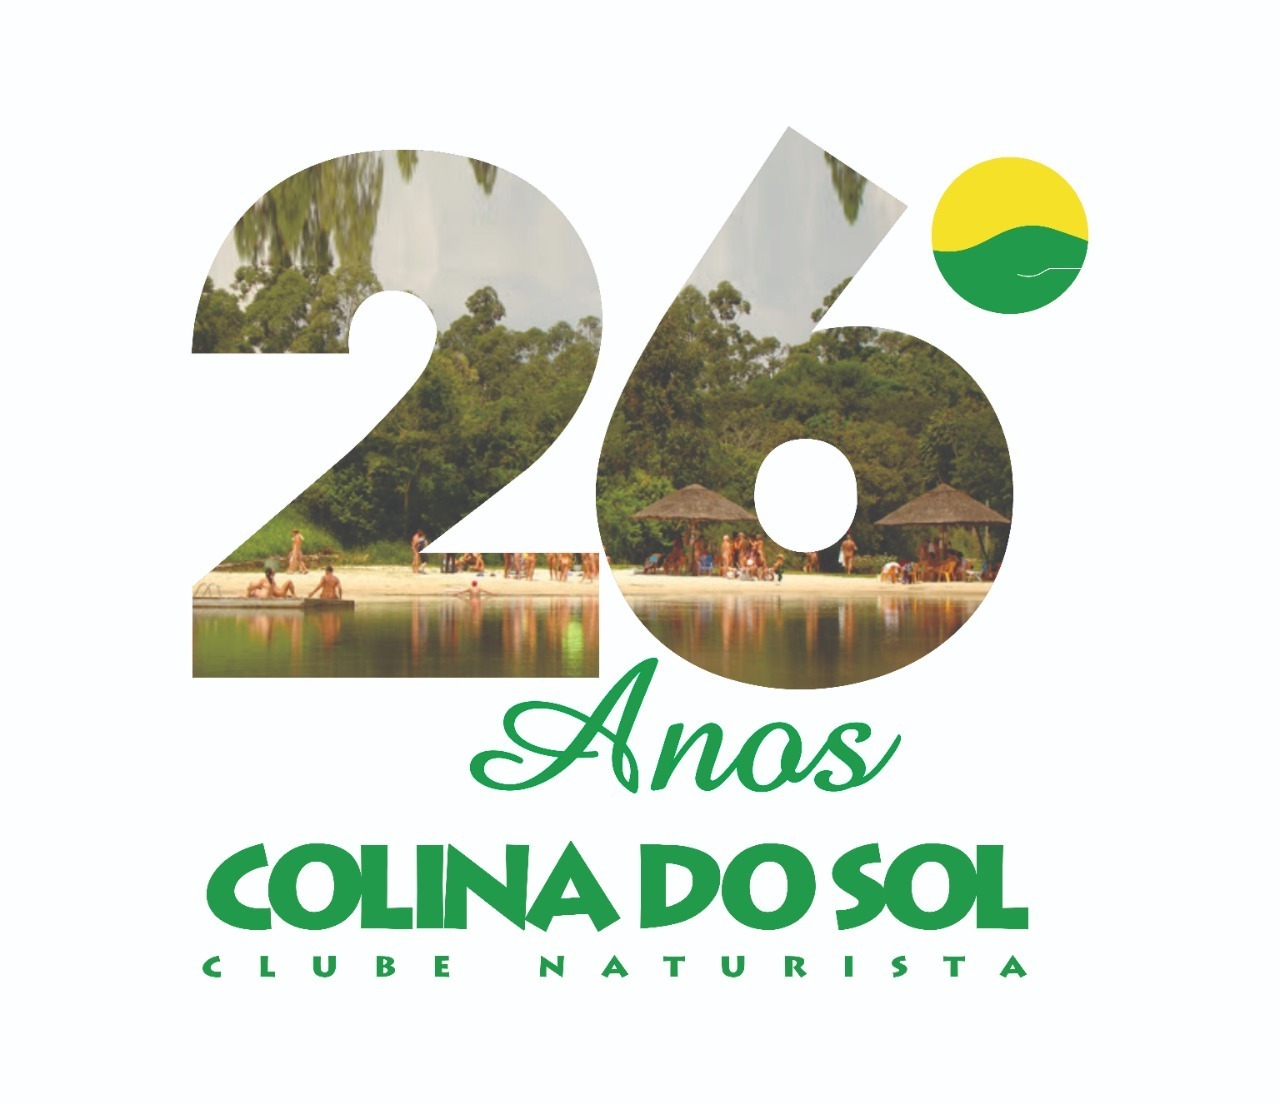 CLUBE NATURISTA COLINA DO SOL